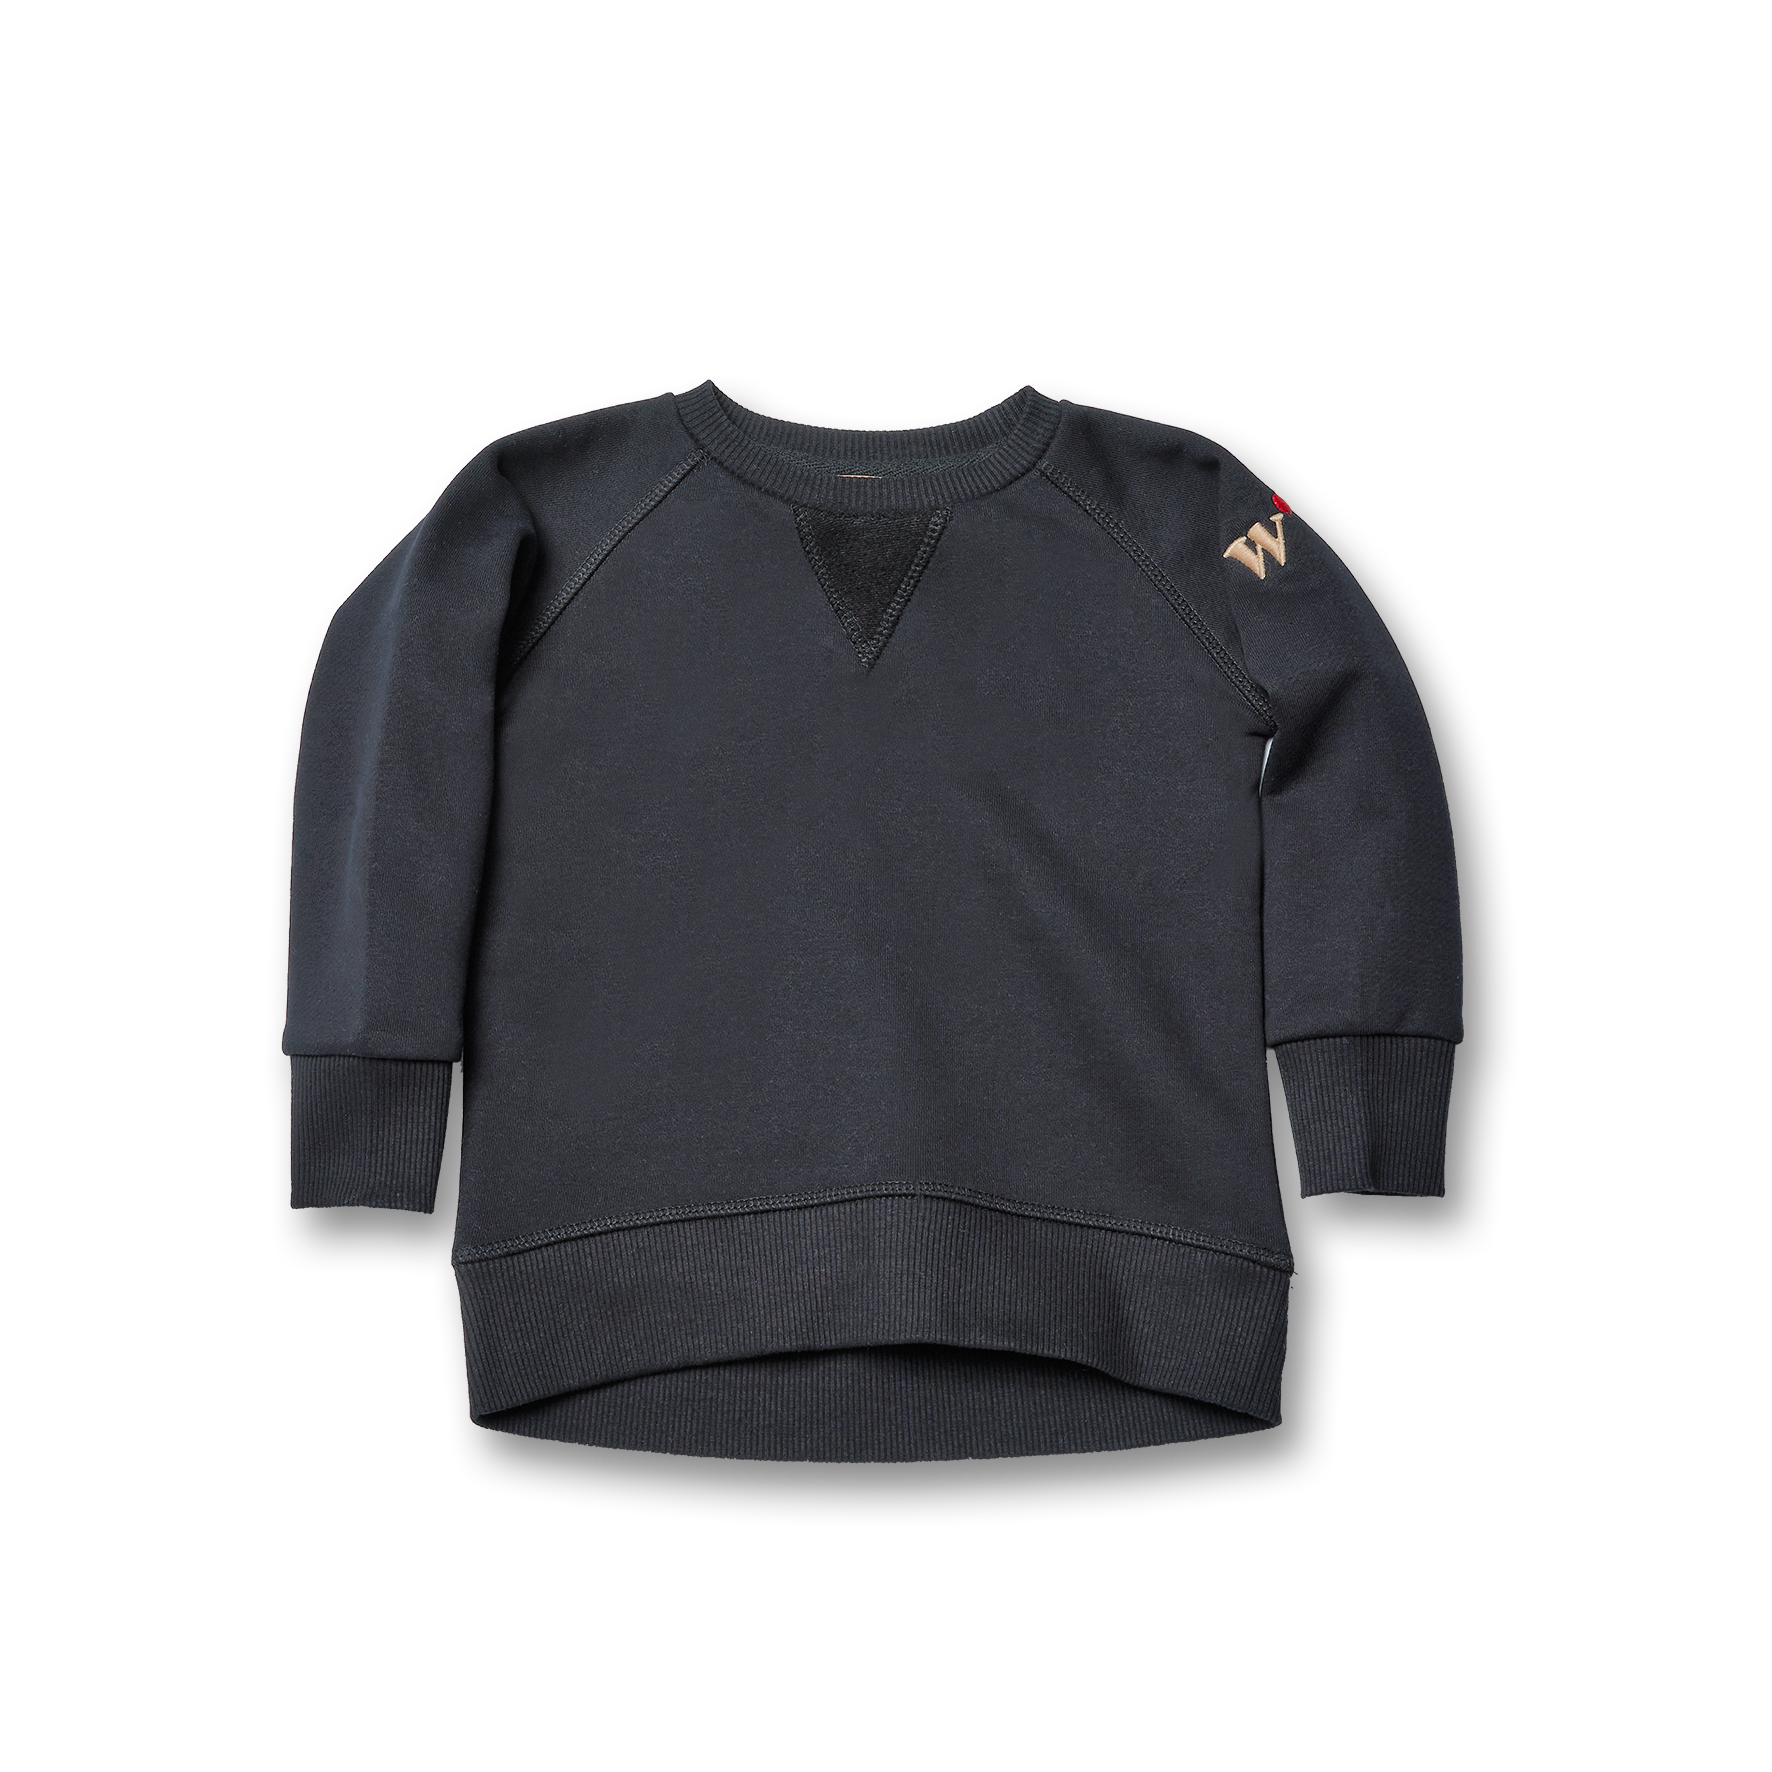 Unisex Stylish Sweatshirt